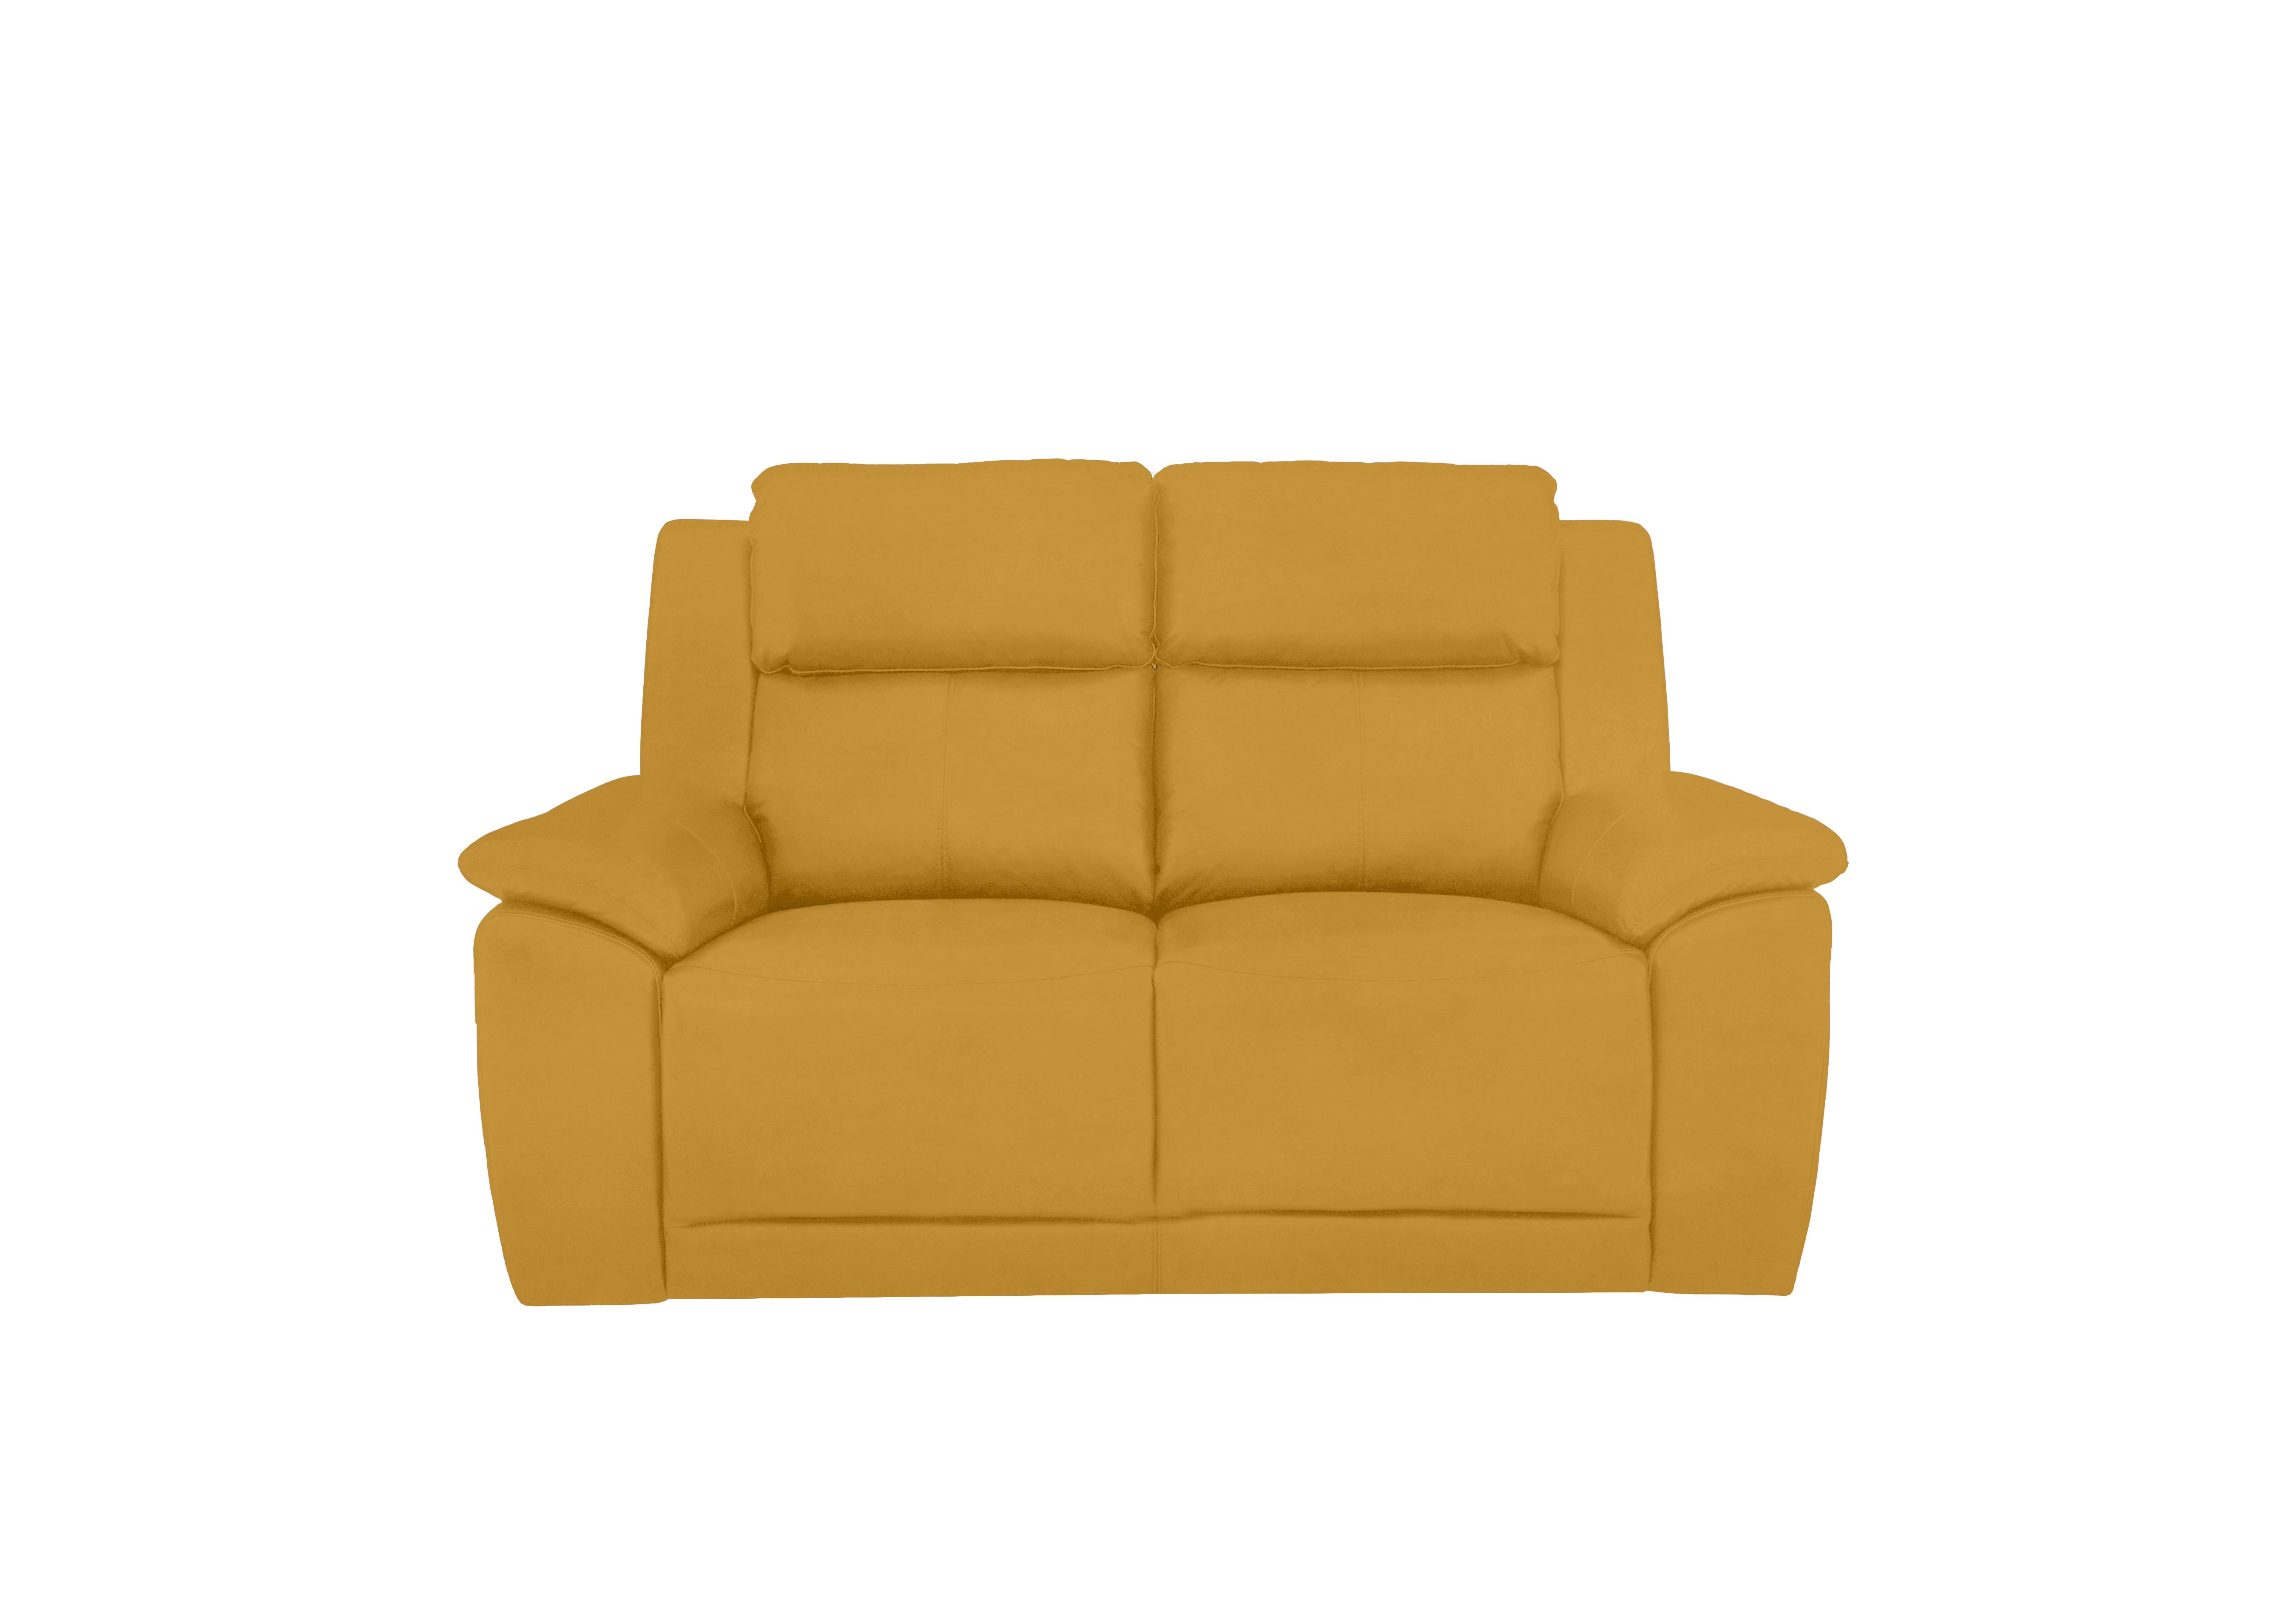 Utah 2 Seater Fabric Sofa in Velvet Giallo Vv-0310 on Furniture Village